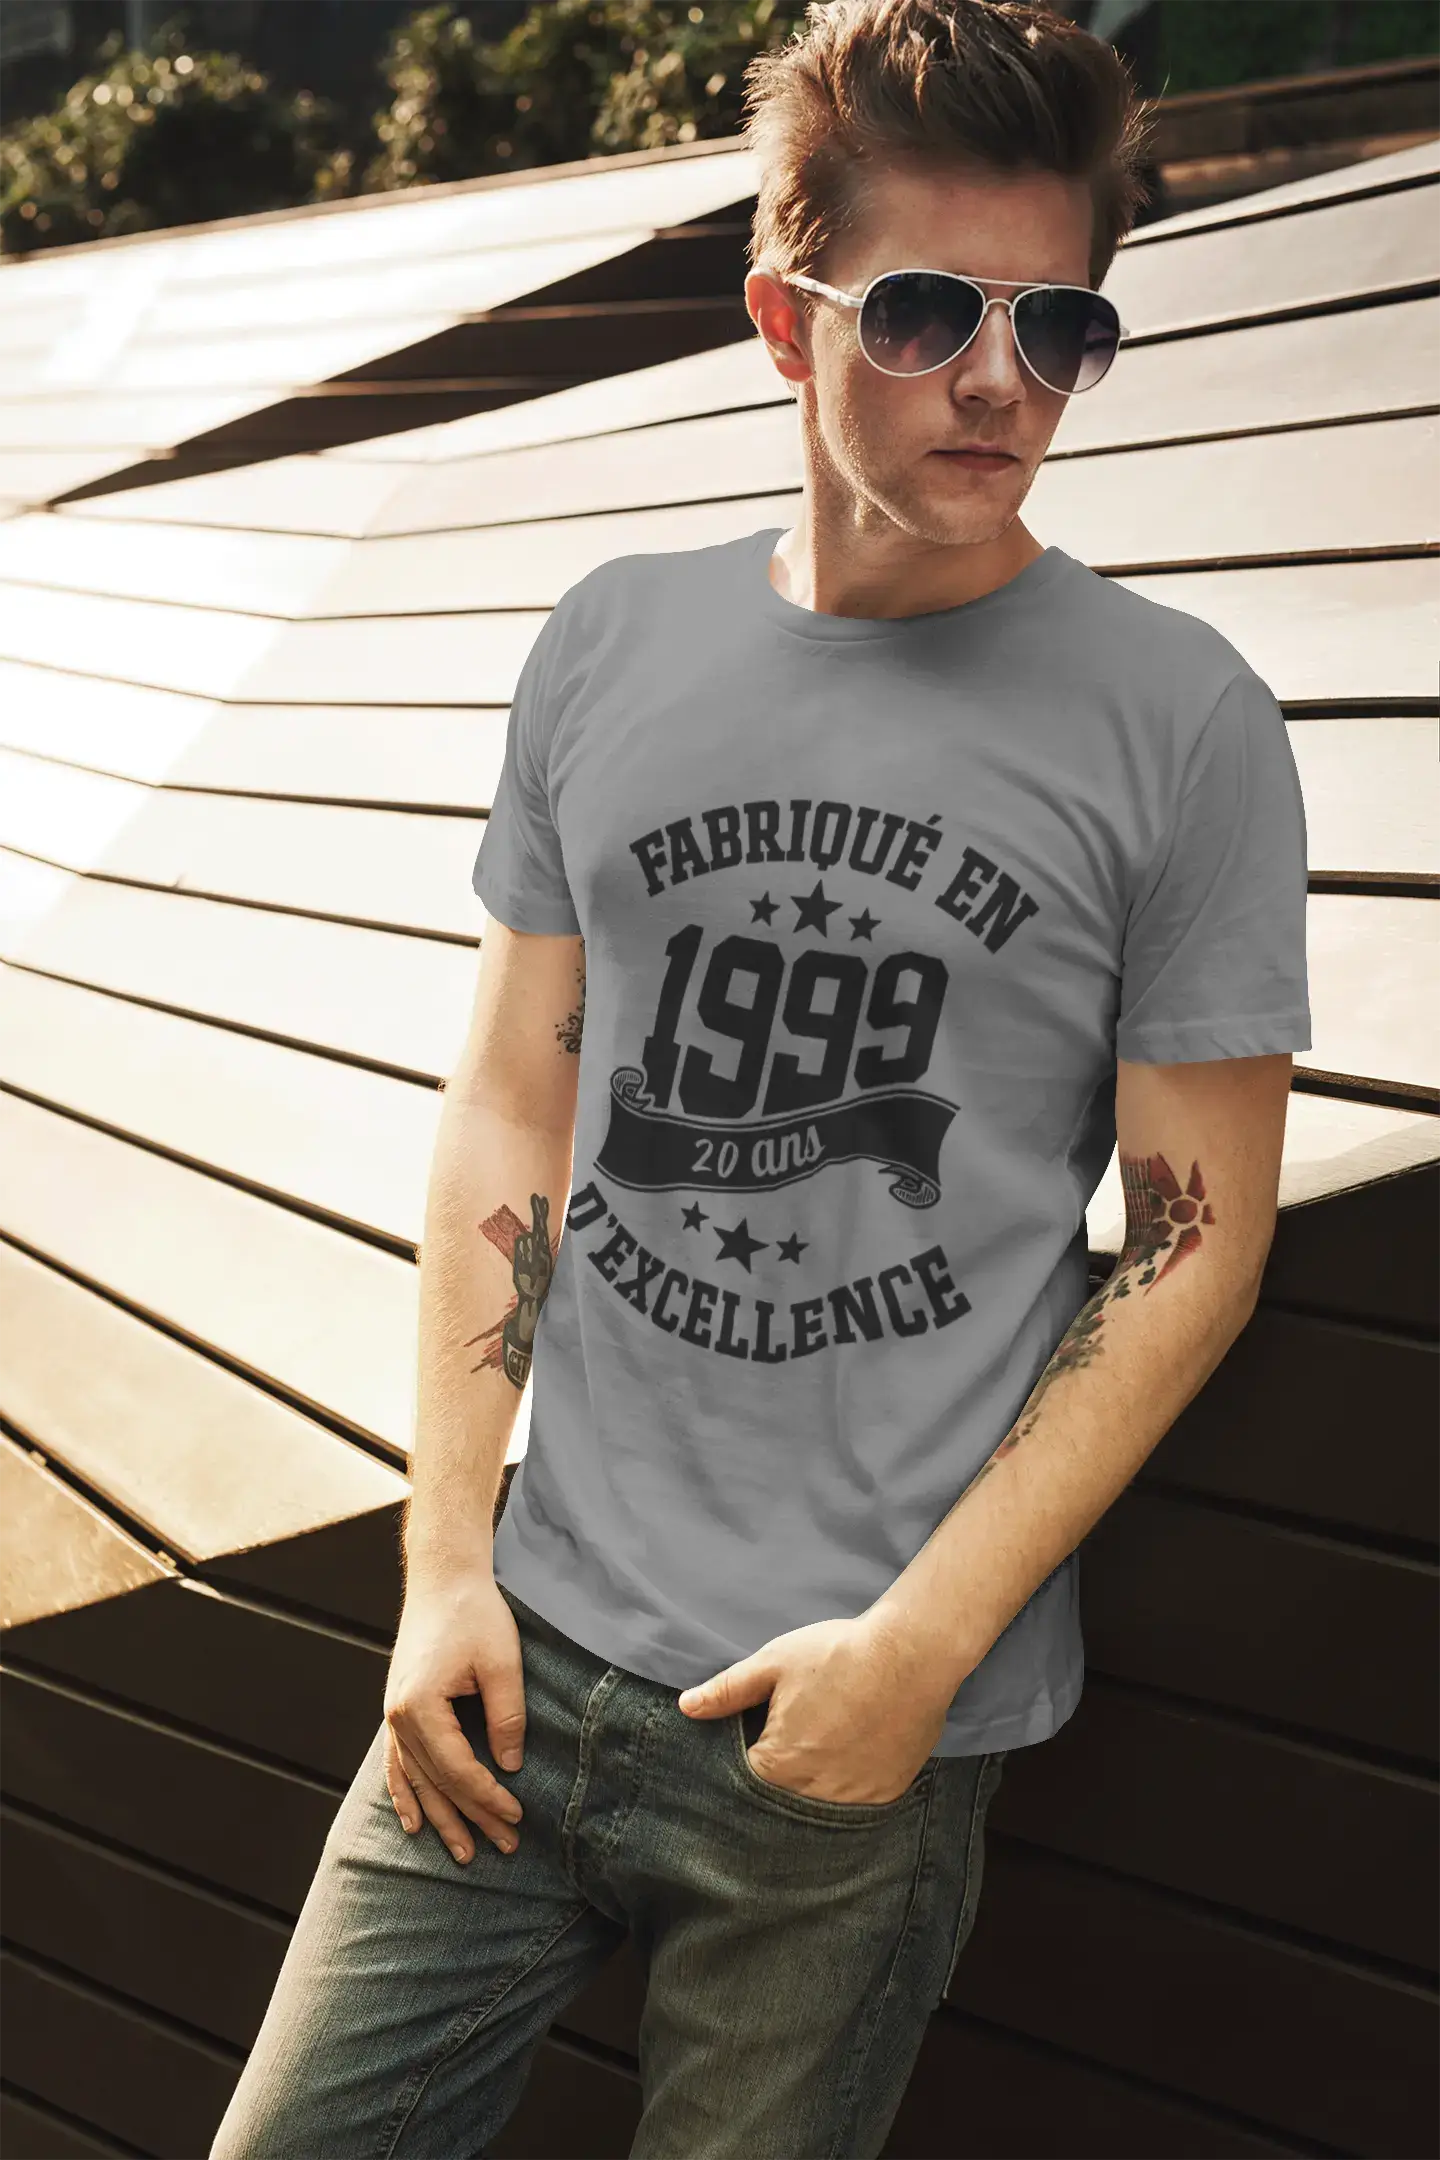 ULTRABASIC - Fabriqué en 1999, 20 Ans d'être Génial Unisex T-Shirt Royal